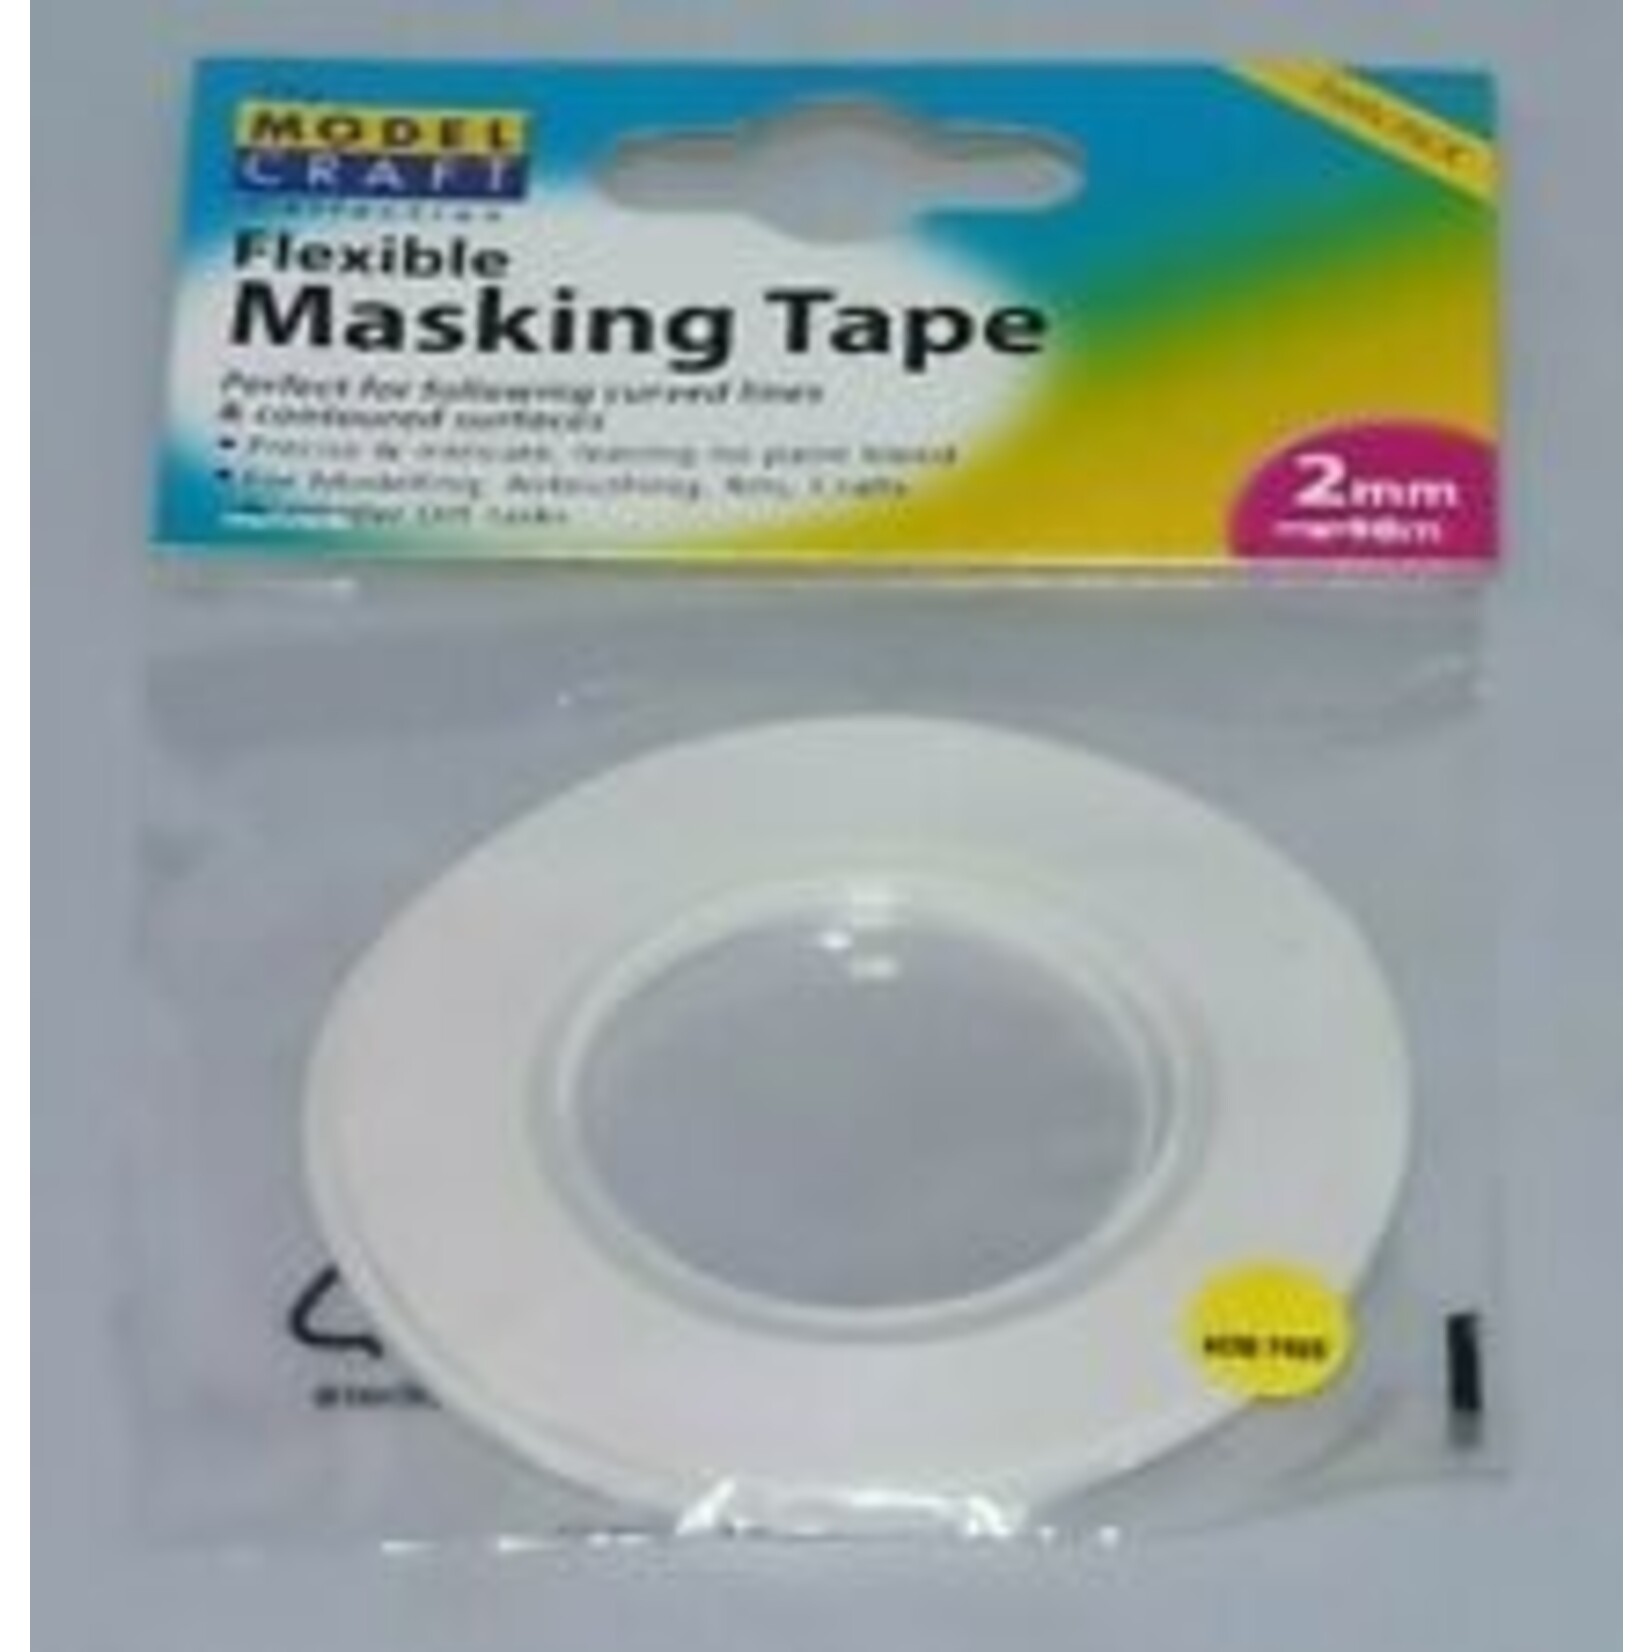 Model Craft Flexible Masking Tape 2mm